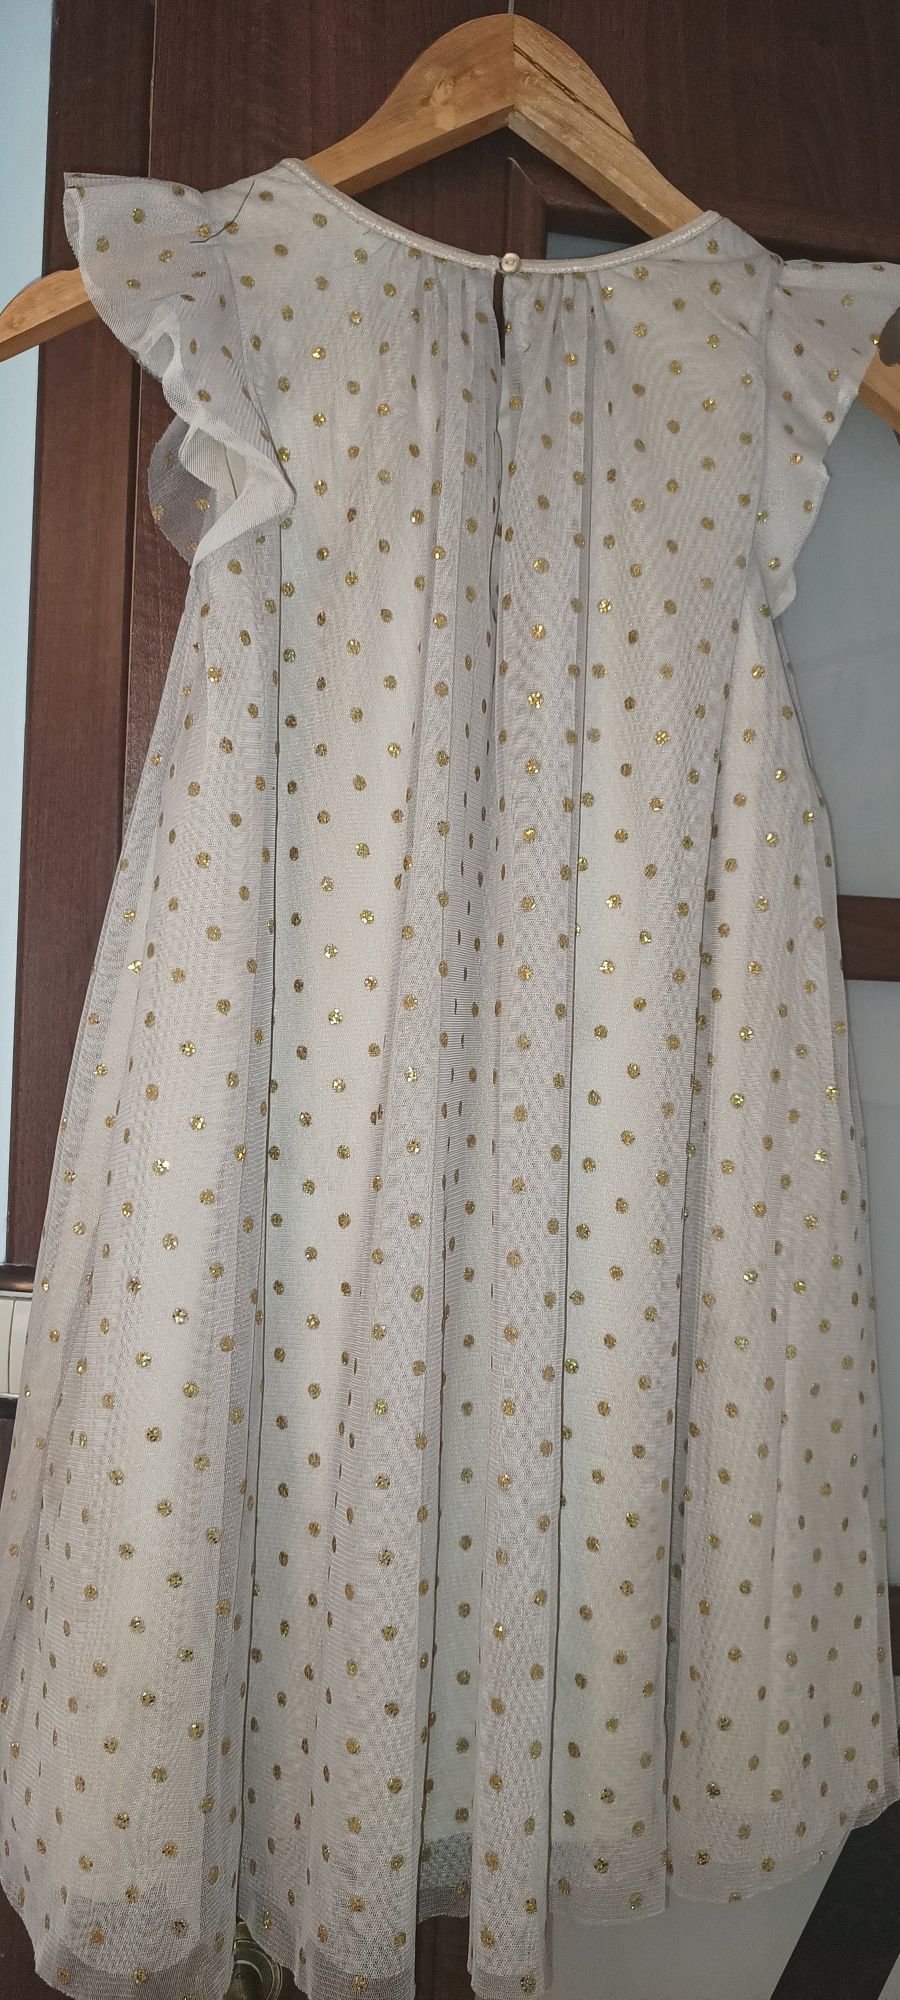 Śliczna Tiulowa sukienka dla dziewczynki, święta, komunia H&M 140 cm